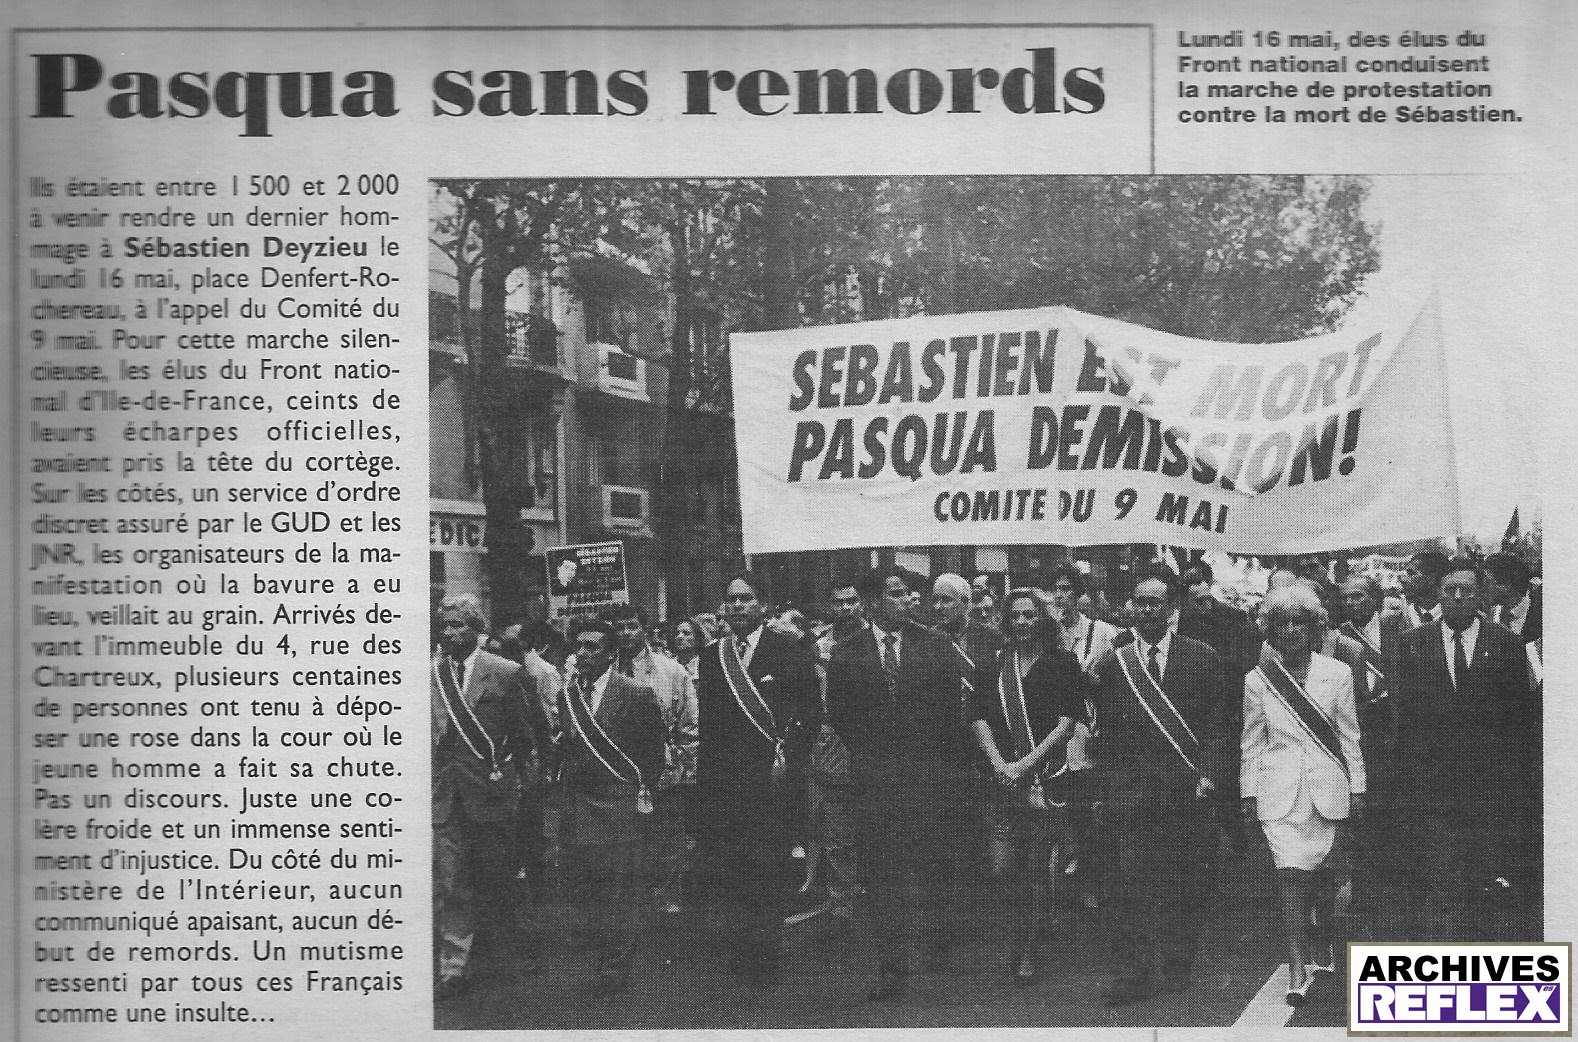 "Lundi 16 mai, des élus du Front National conduisent la marche de protestation contre la mort de Sébastien" Minute du 25 mai 1994